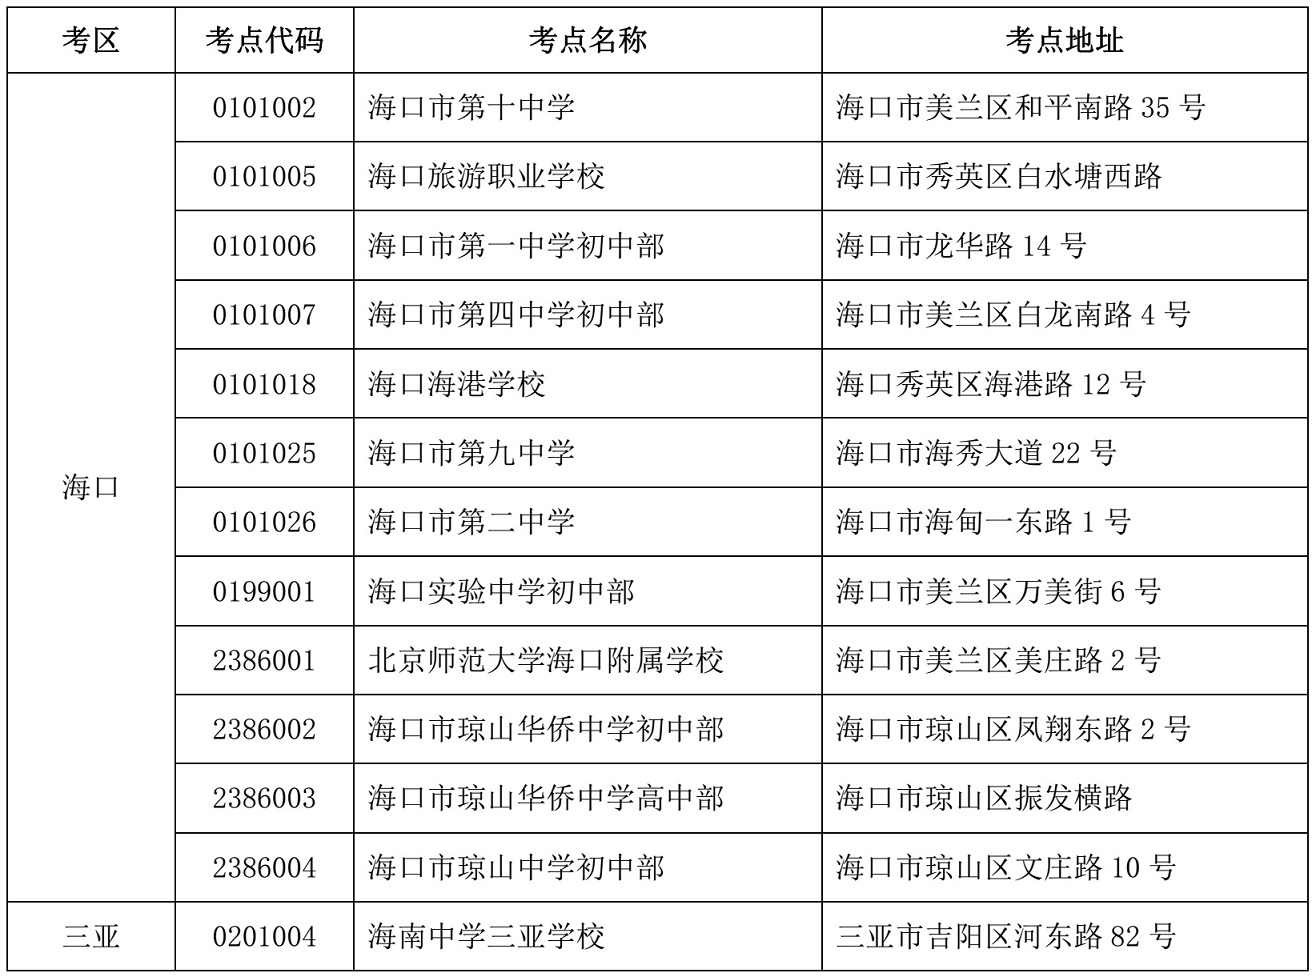  海南省2021年10月高等教育自学考试各考点详细地址：